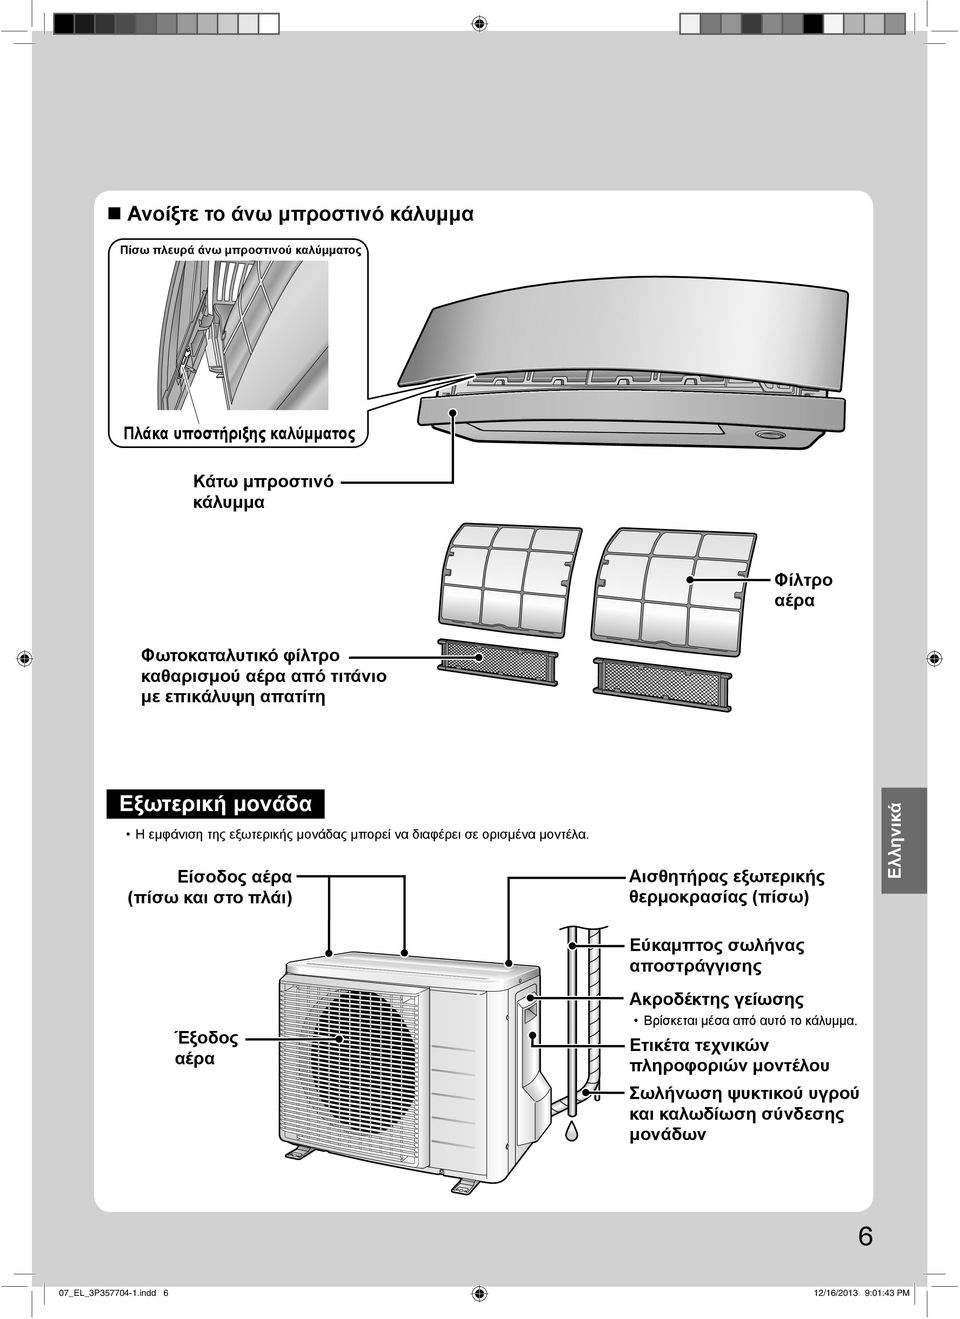 Είσοδος αέρα (πίσω και στο πλάι) Αισθητήρας εξωτερικής θερμοκρασίας (πίσω) Eλληνικά Έξοδος αέρα Εύκαμπτος σωλήνας αποστράγγισης Ακροδέκτης γείωσης